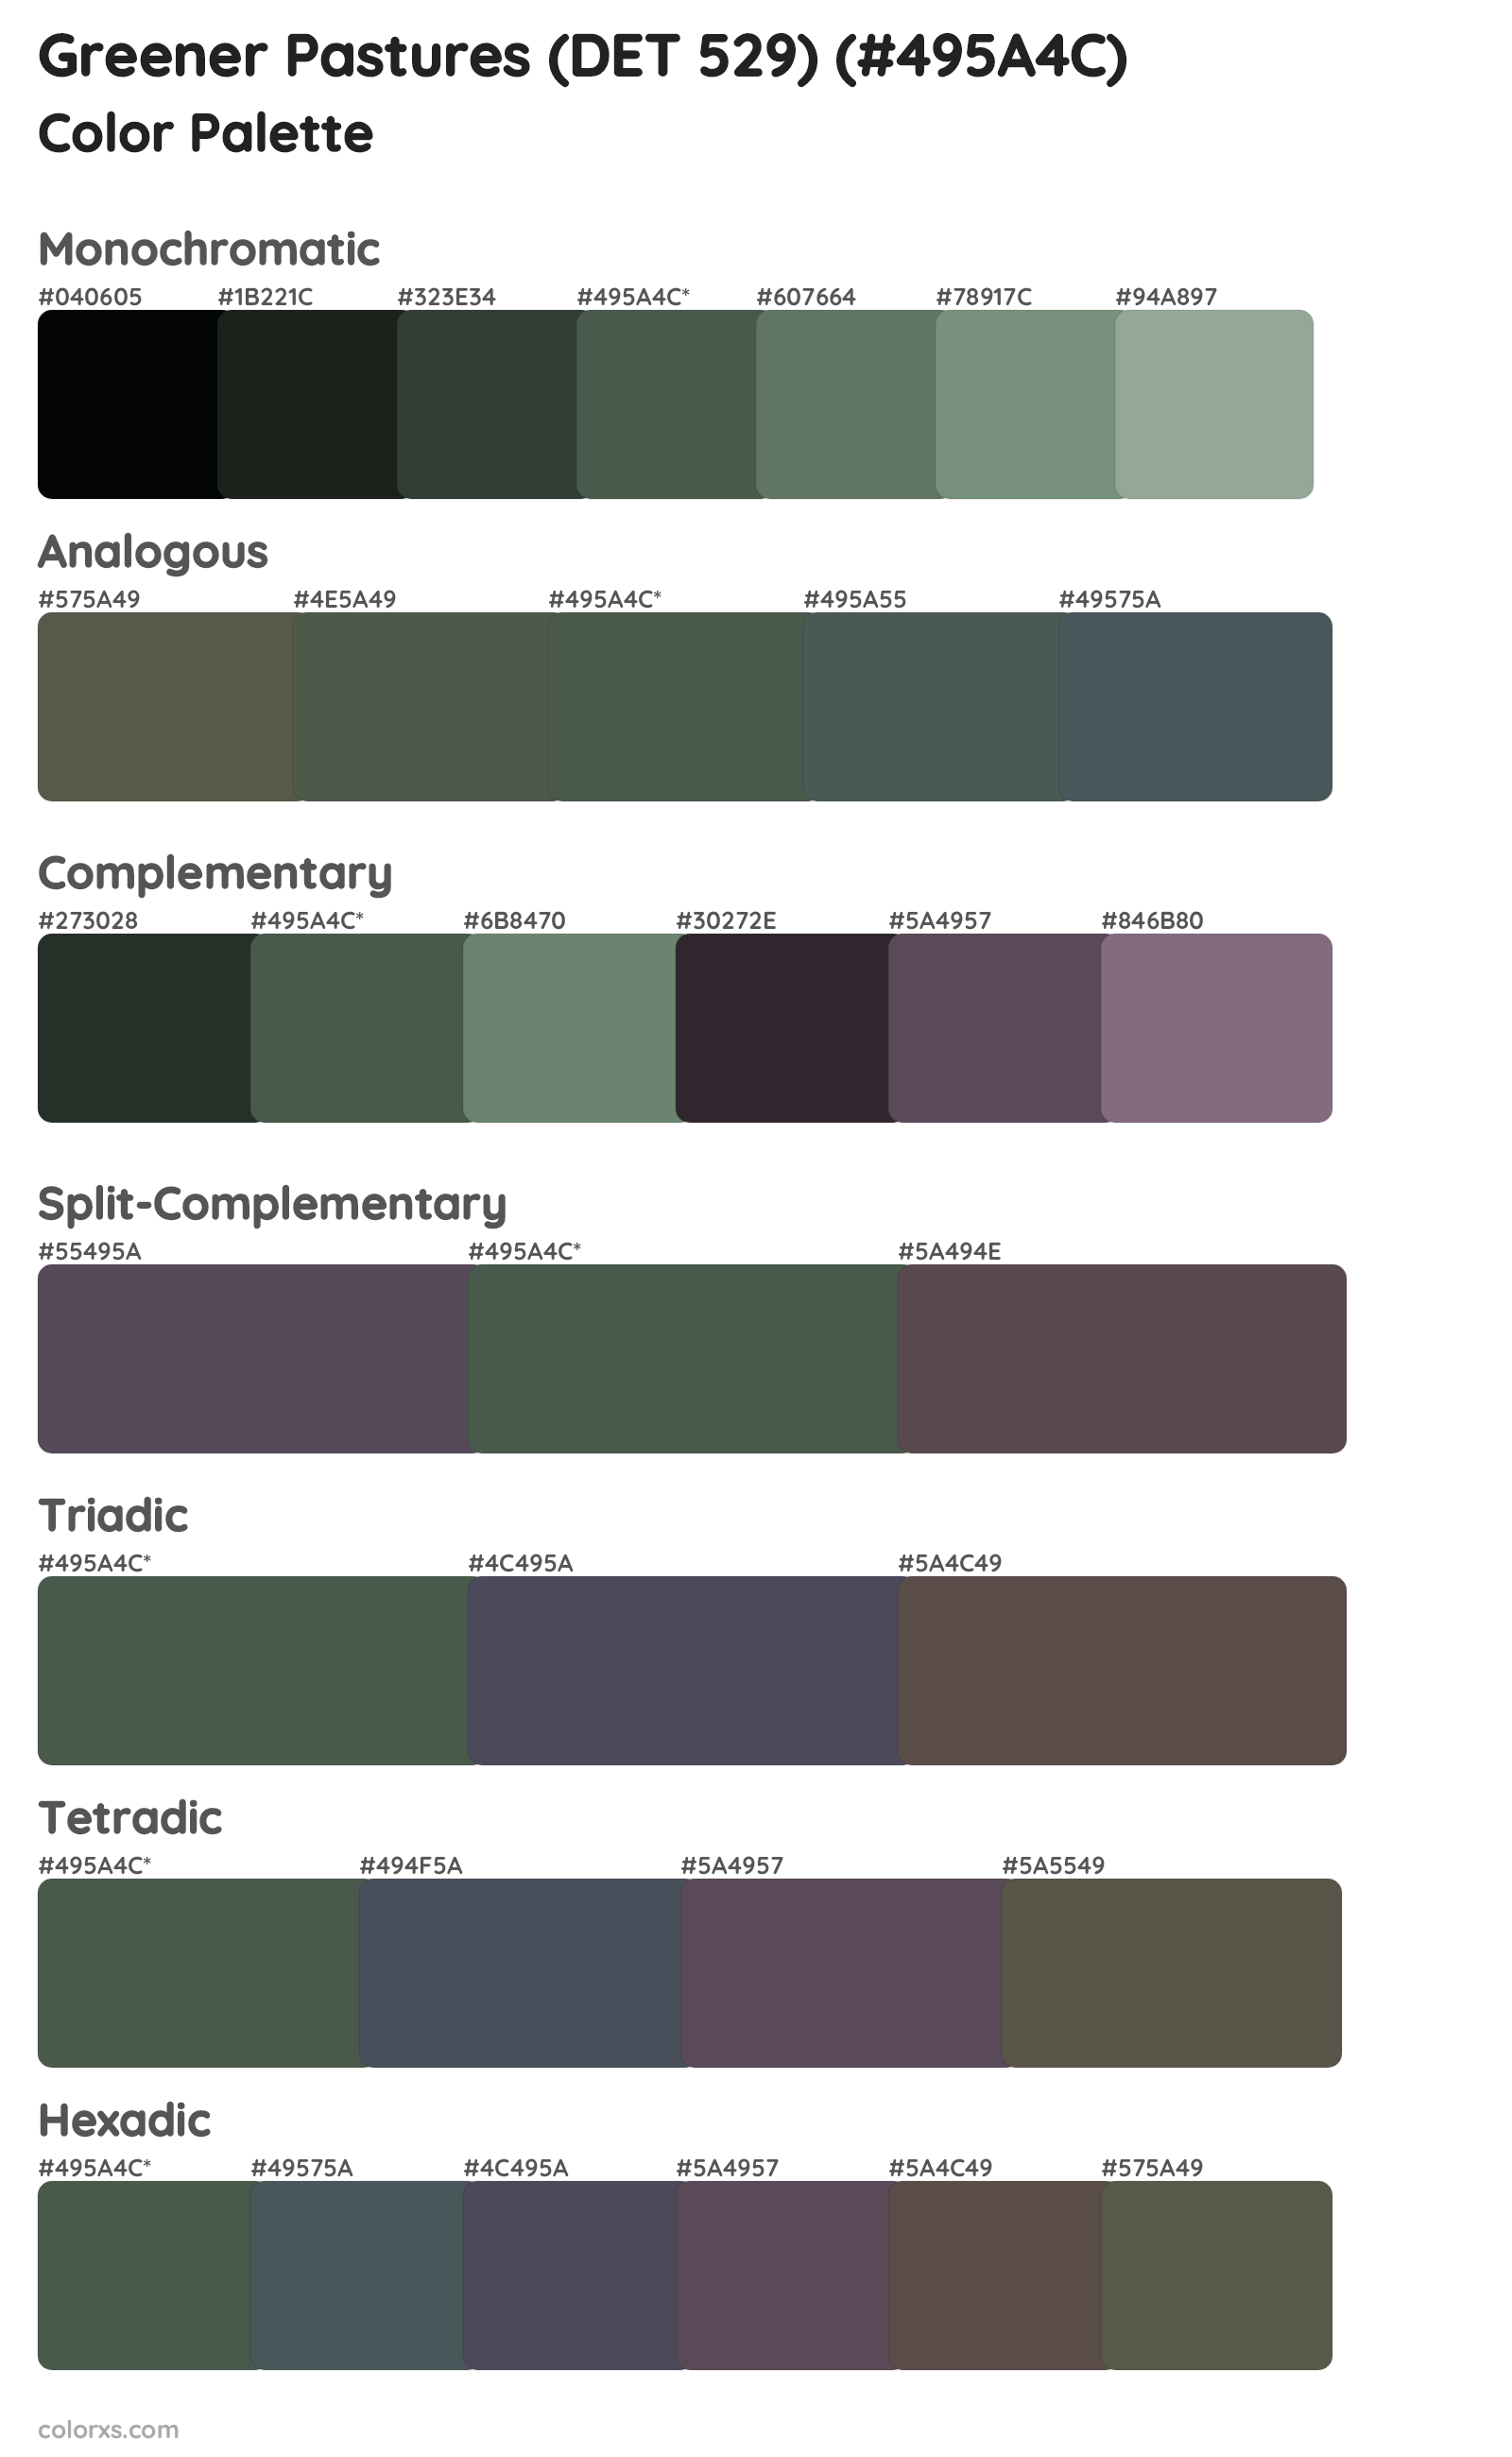 Greener Pastures (DET 529) Color Scheme Palettes